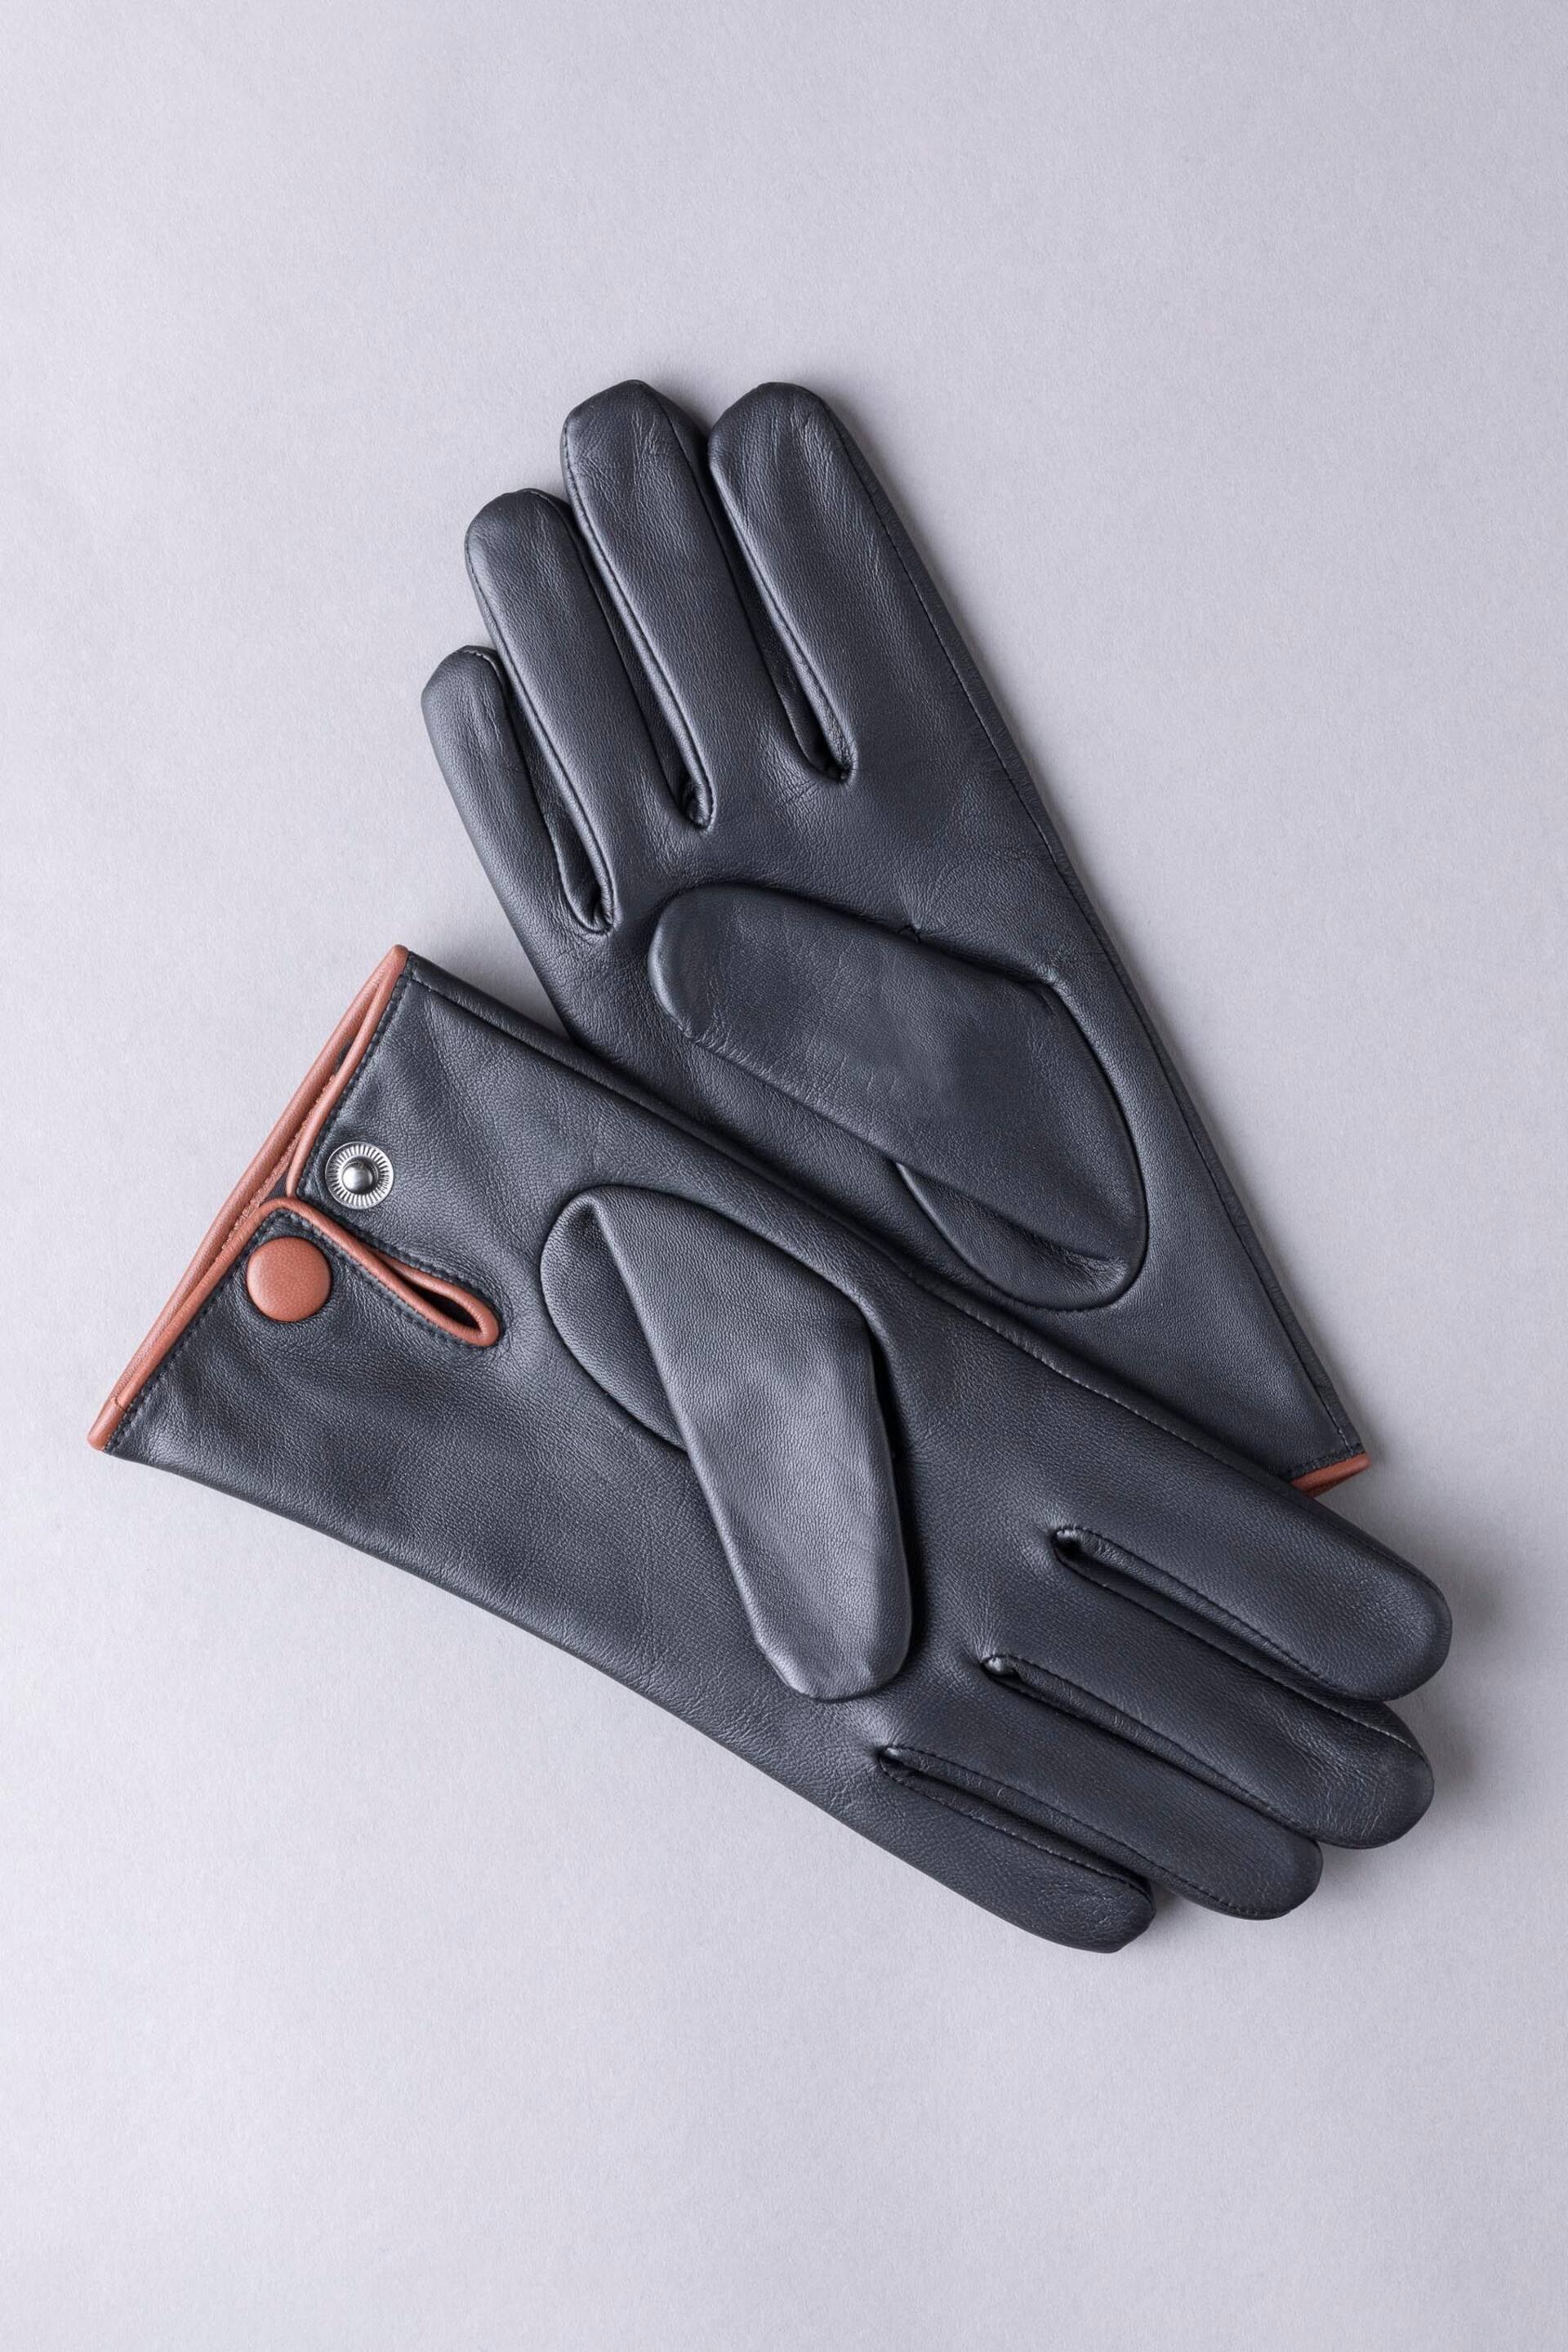 Lakeland Leather Swinside Leather Gloves - Image 2 of 3